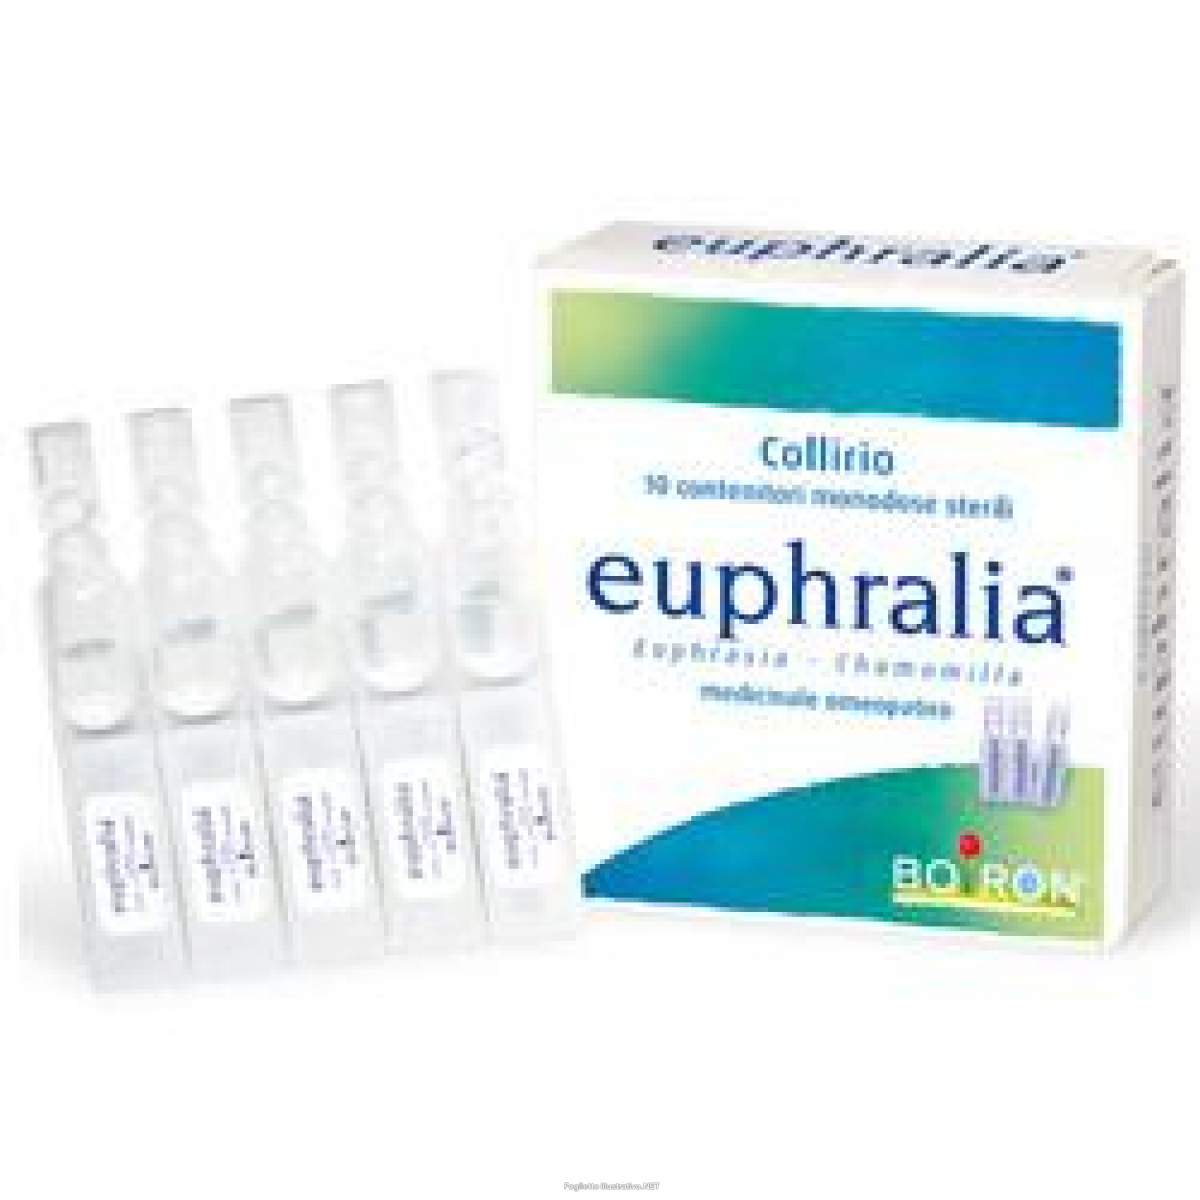 Acquista Online euphralia collirio omeopatico 10 fialette monodose 0,4 ml e Cerca l'offerta più bassa